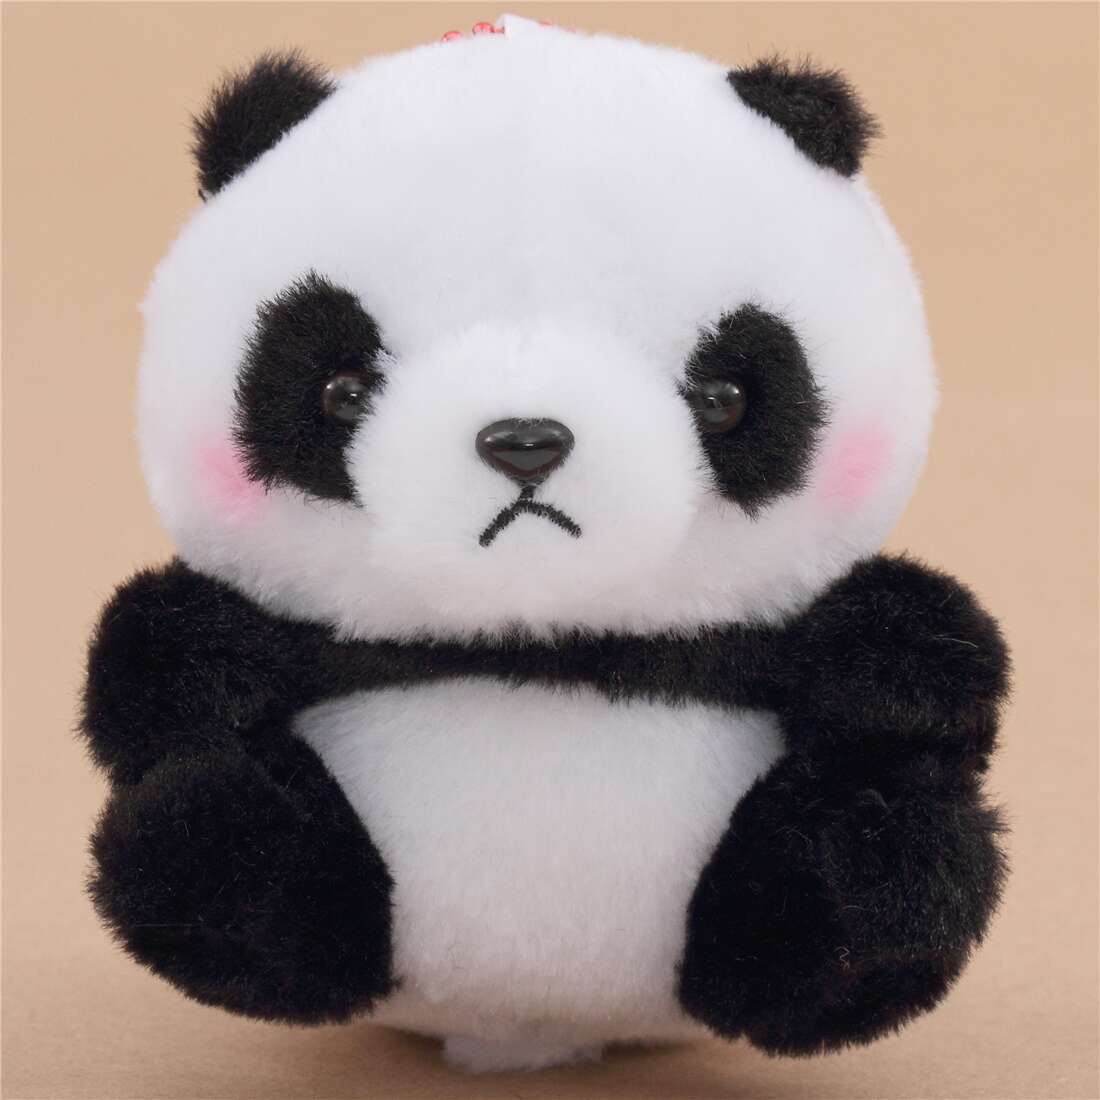 small stuffed panda bear